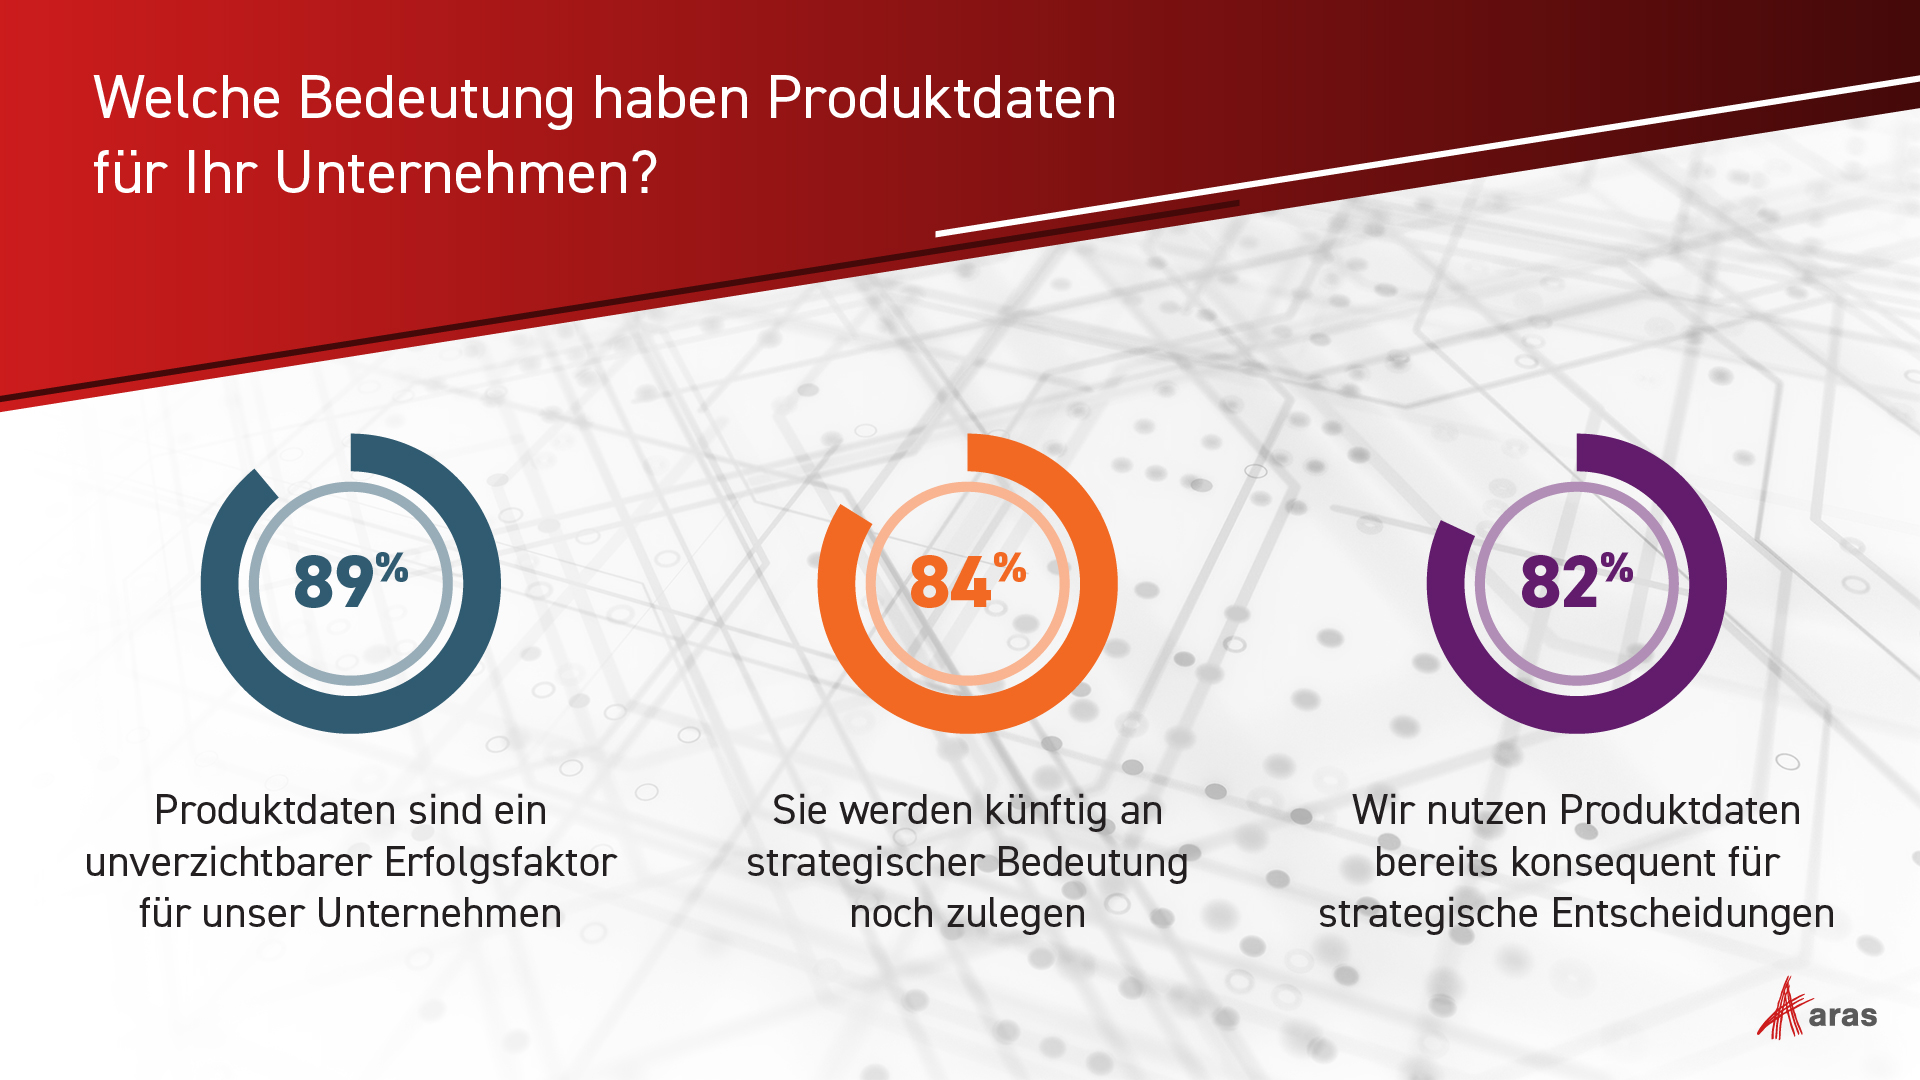 Produktdaten wird eine hohe Relevanz zugesprochen - Quelle: Aras Software GmbH